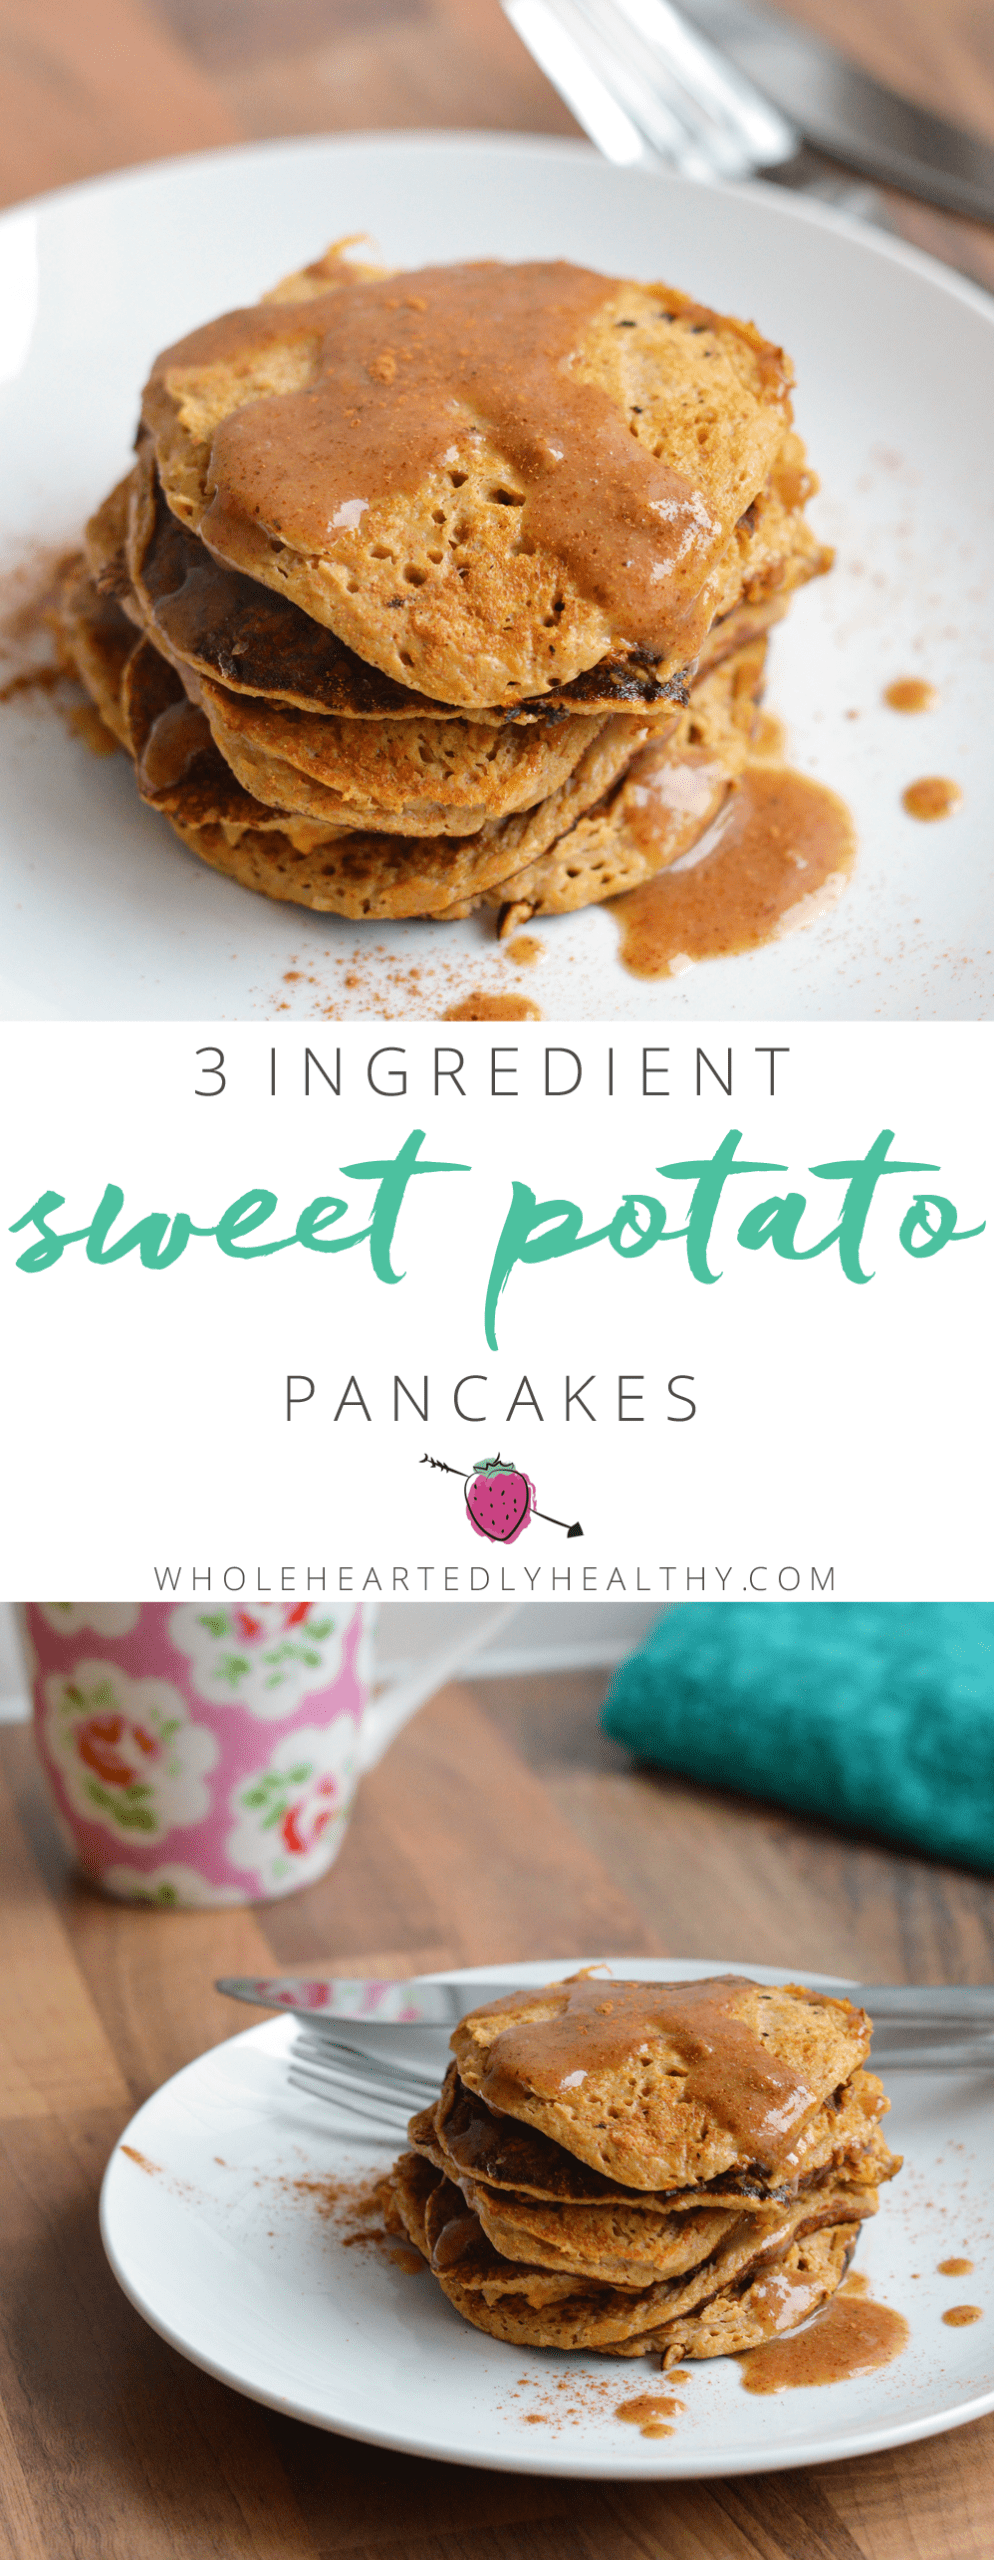 3 ingredient sweet potato pancakes edited 1